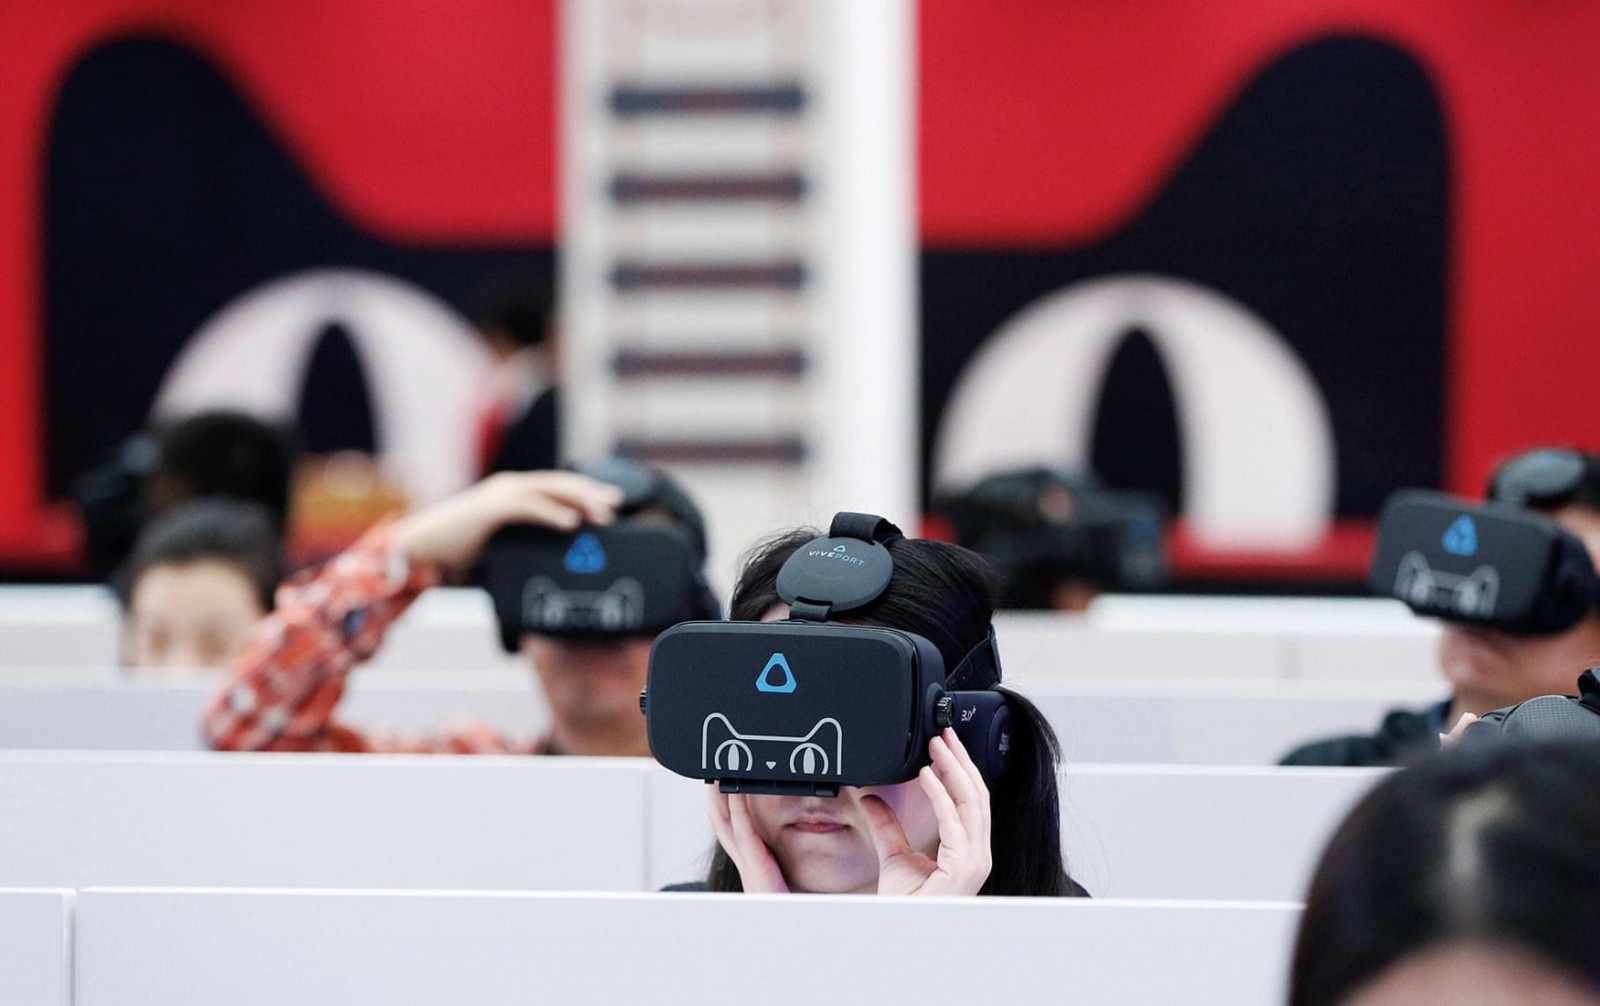 Мечта на продажу: когда виртуальная реальность станет прибыльным делом